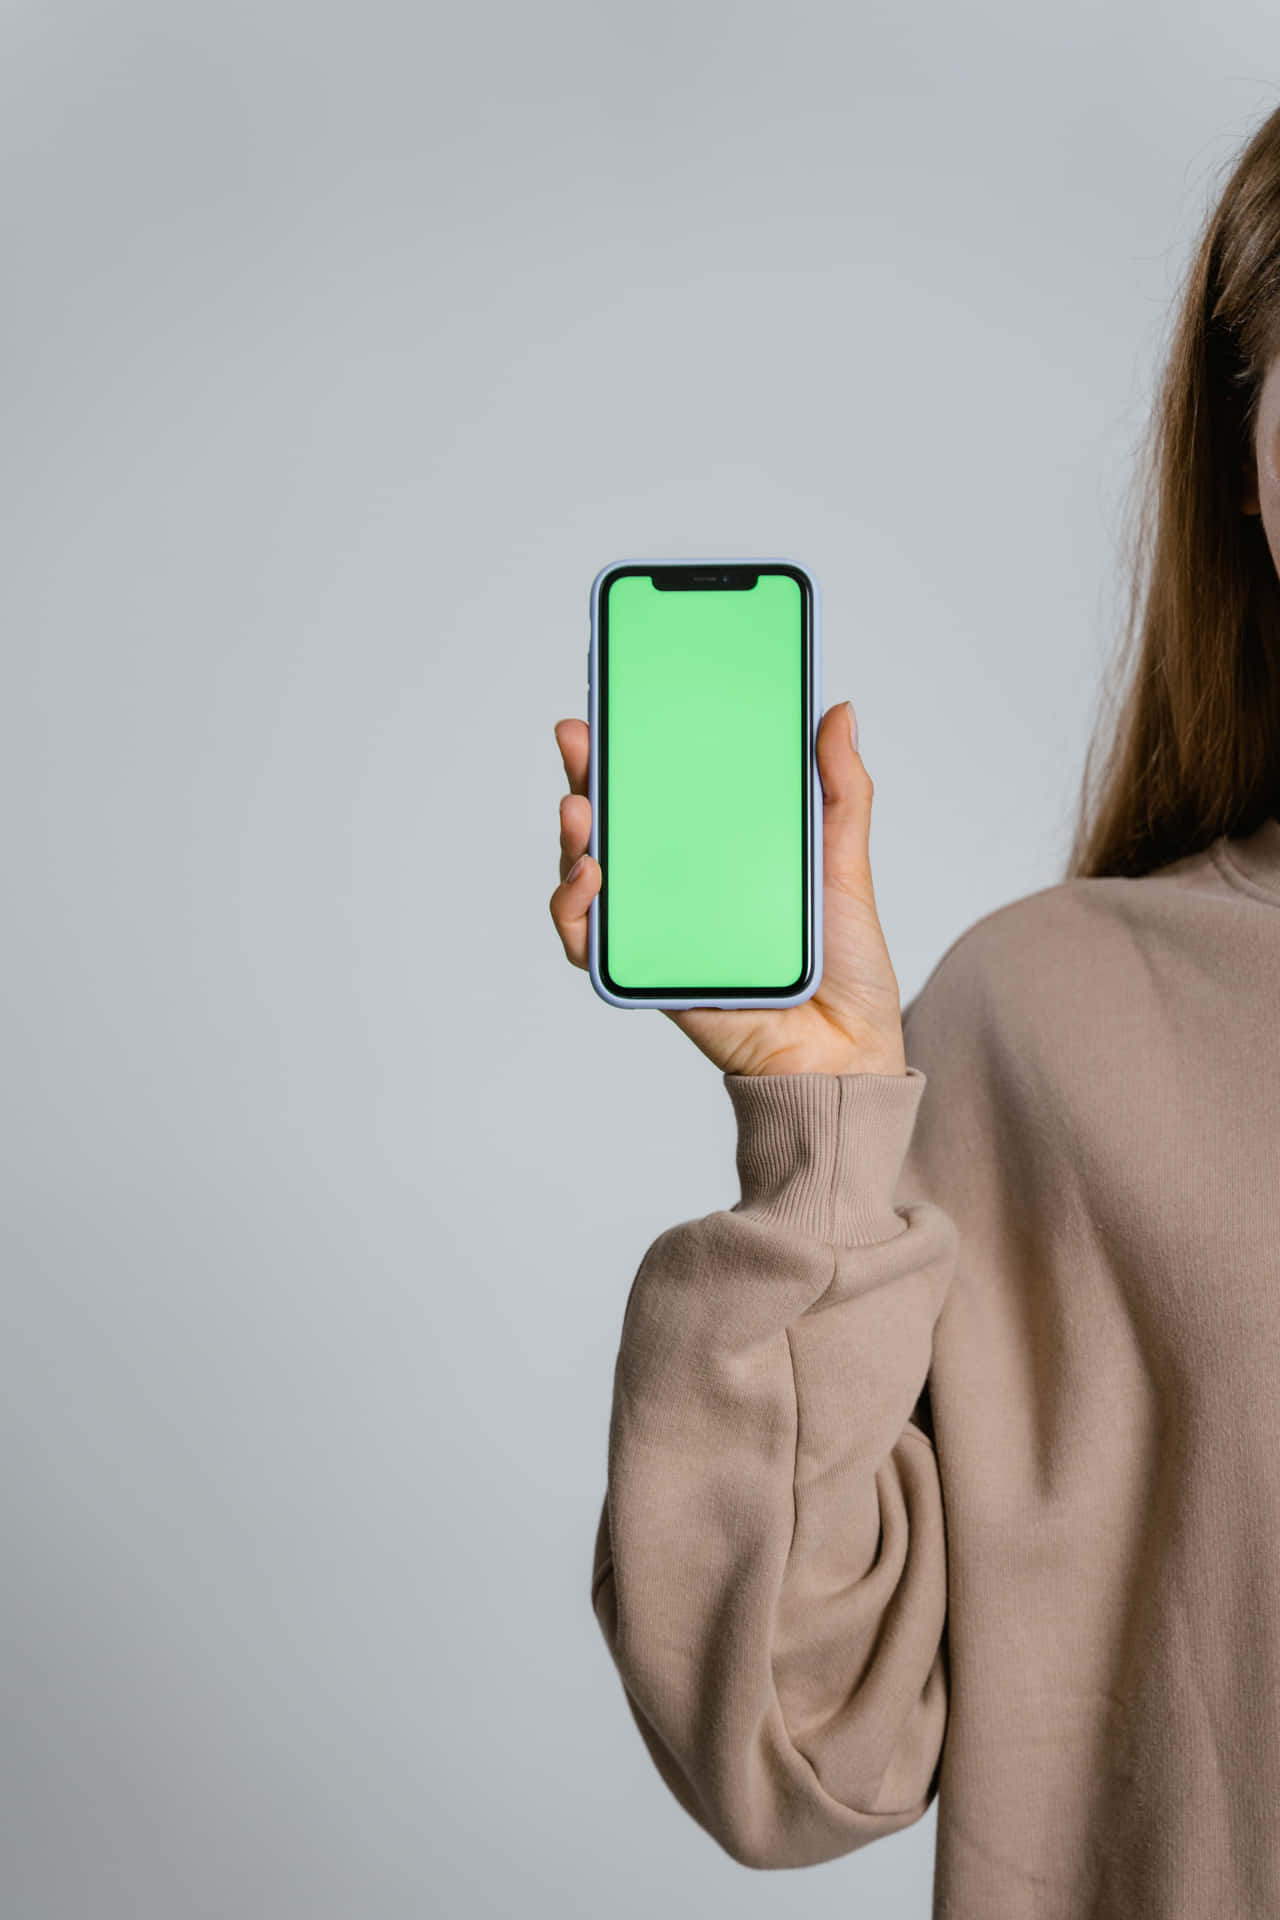 Kvindeholder En Grøn Skærm På En Iphone X.